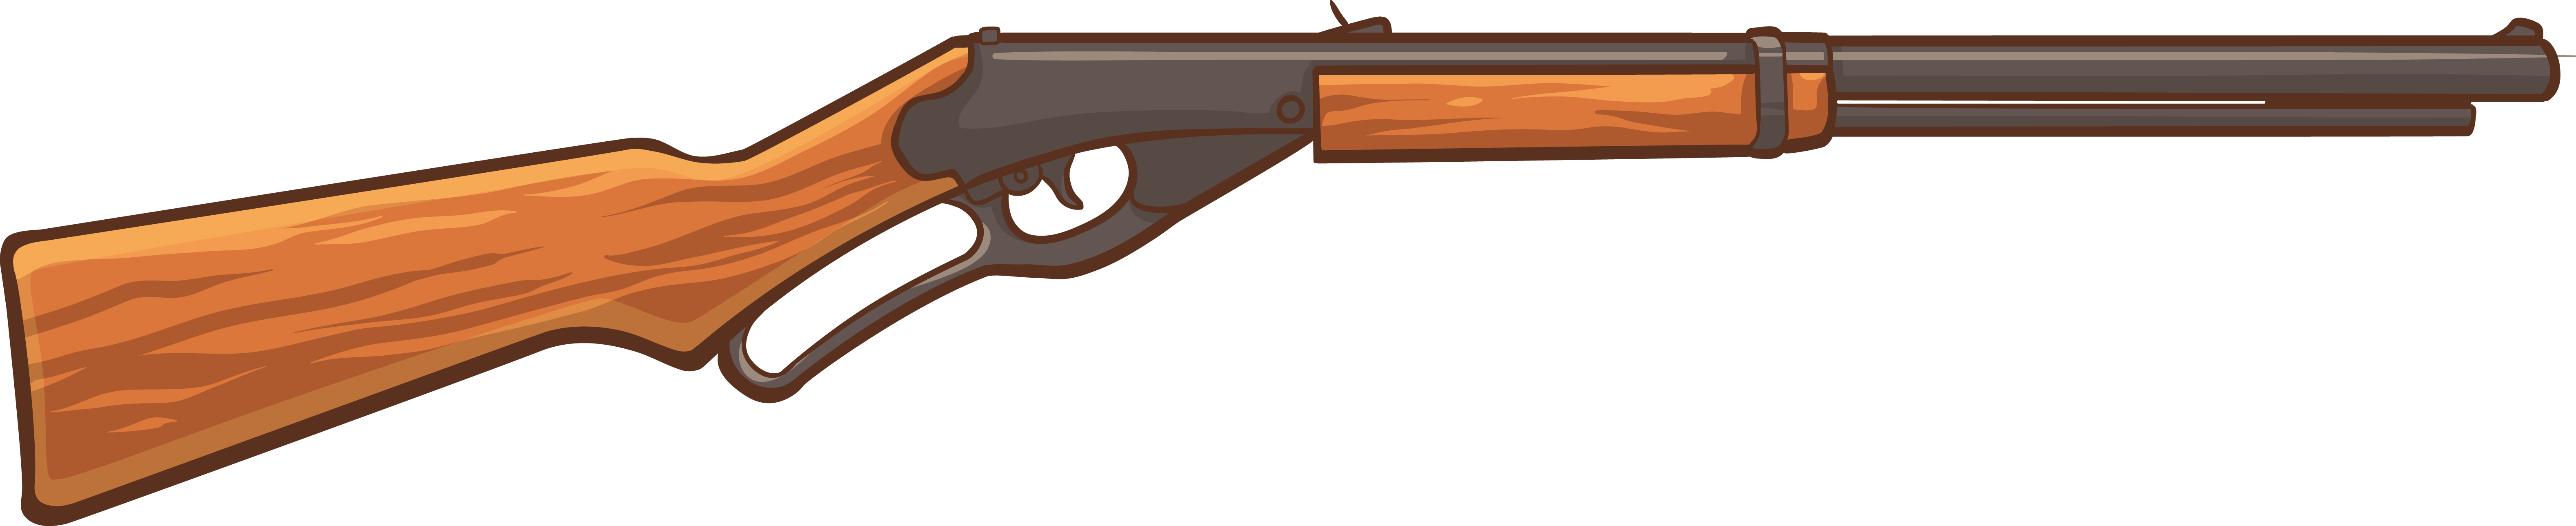 Red Ryder BB Gun